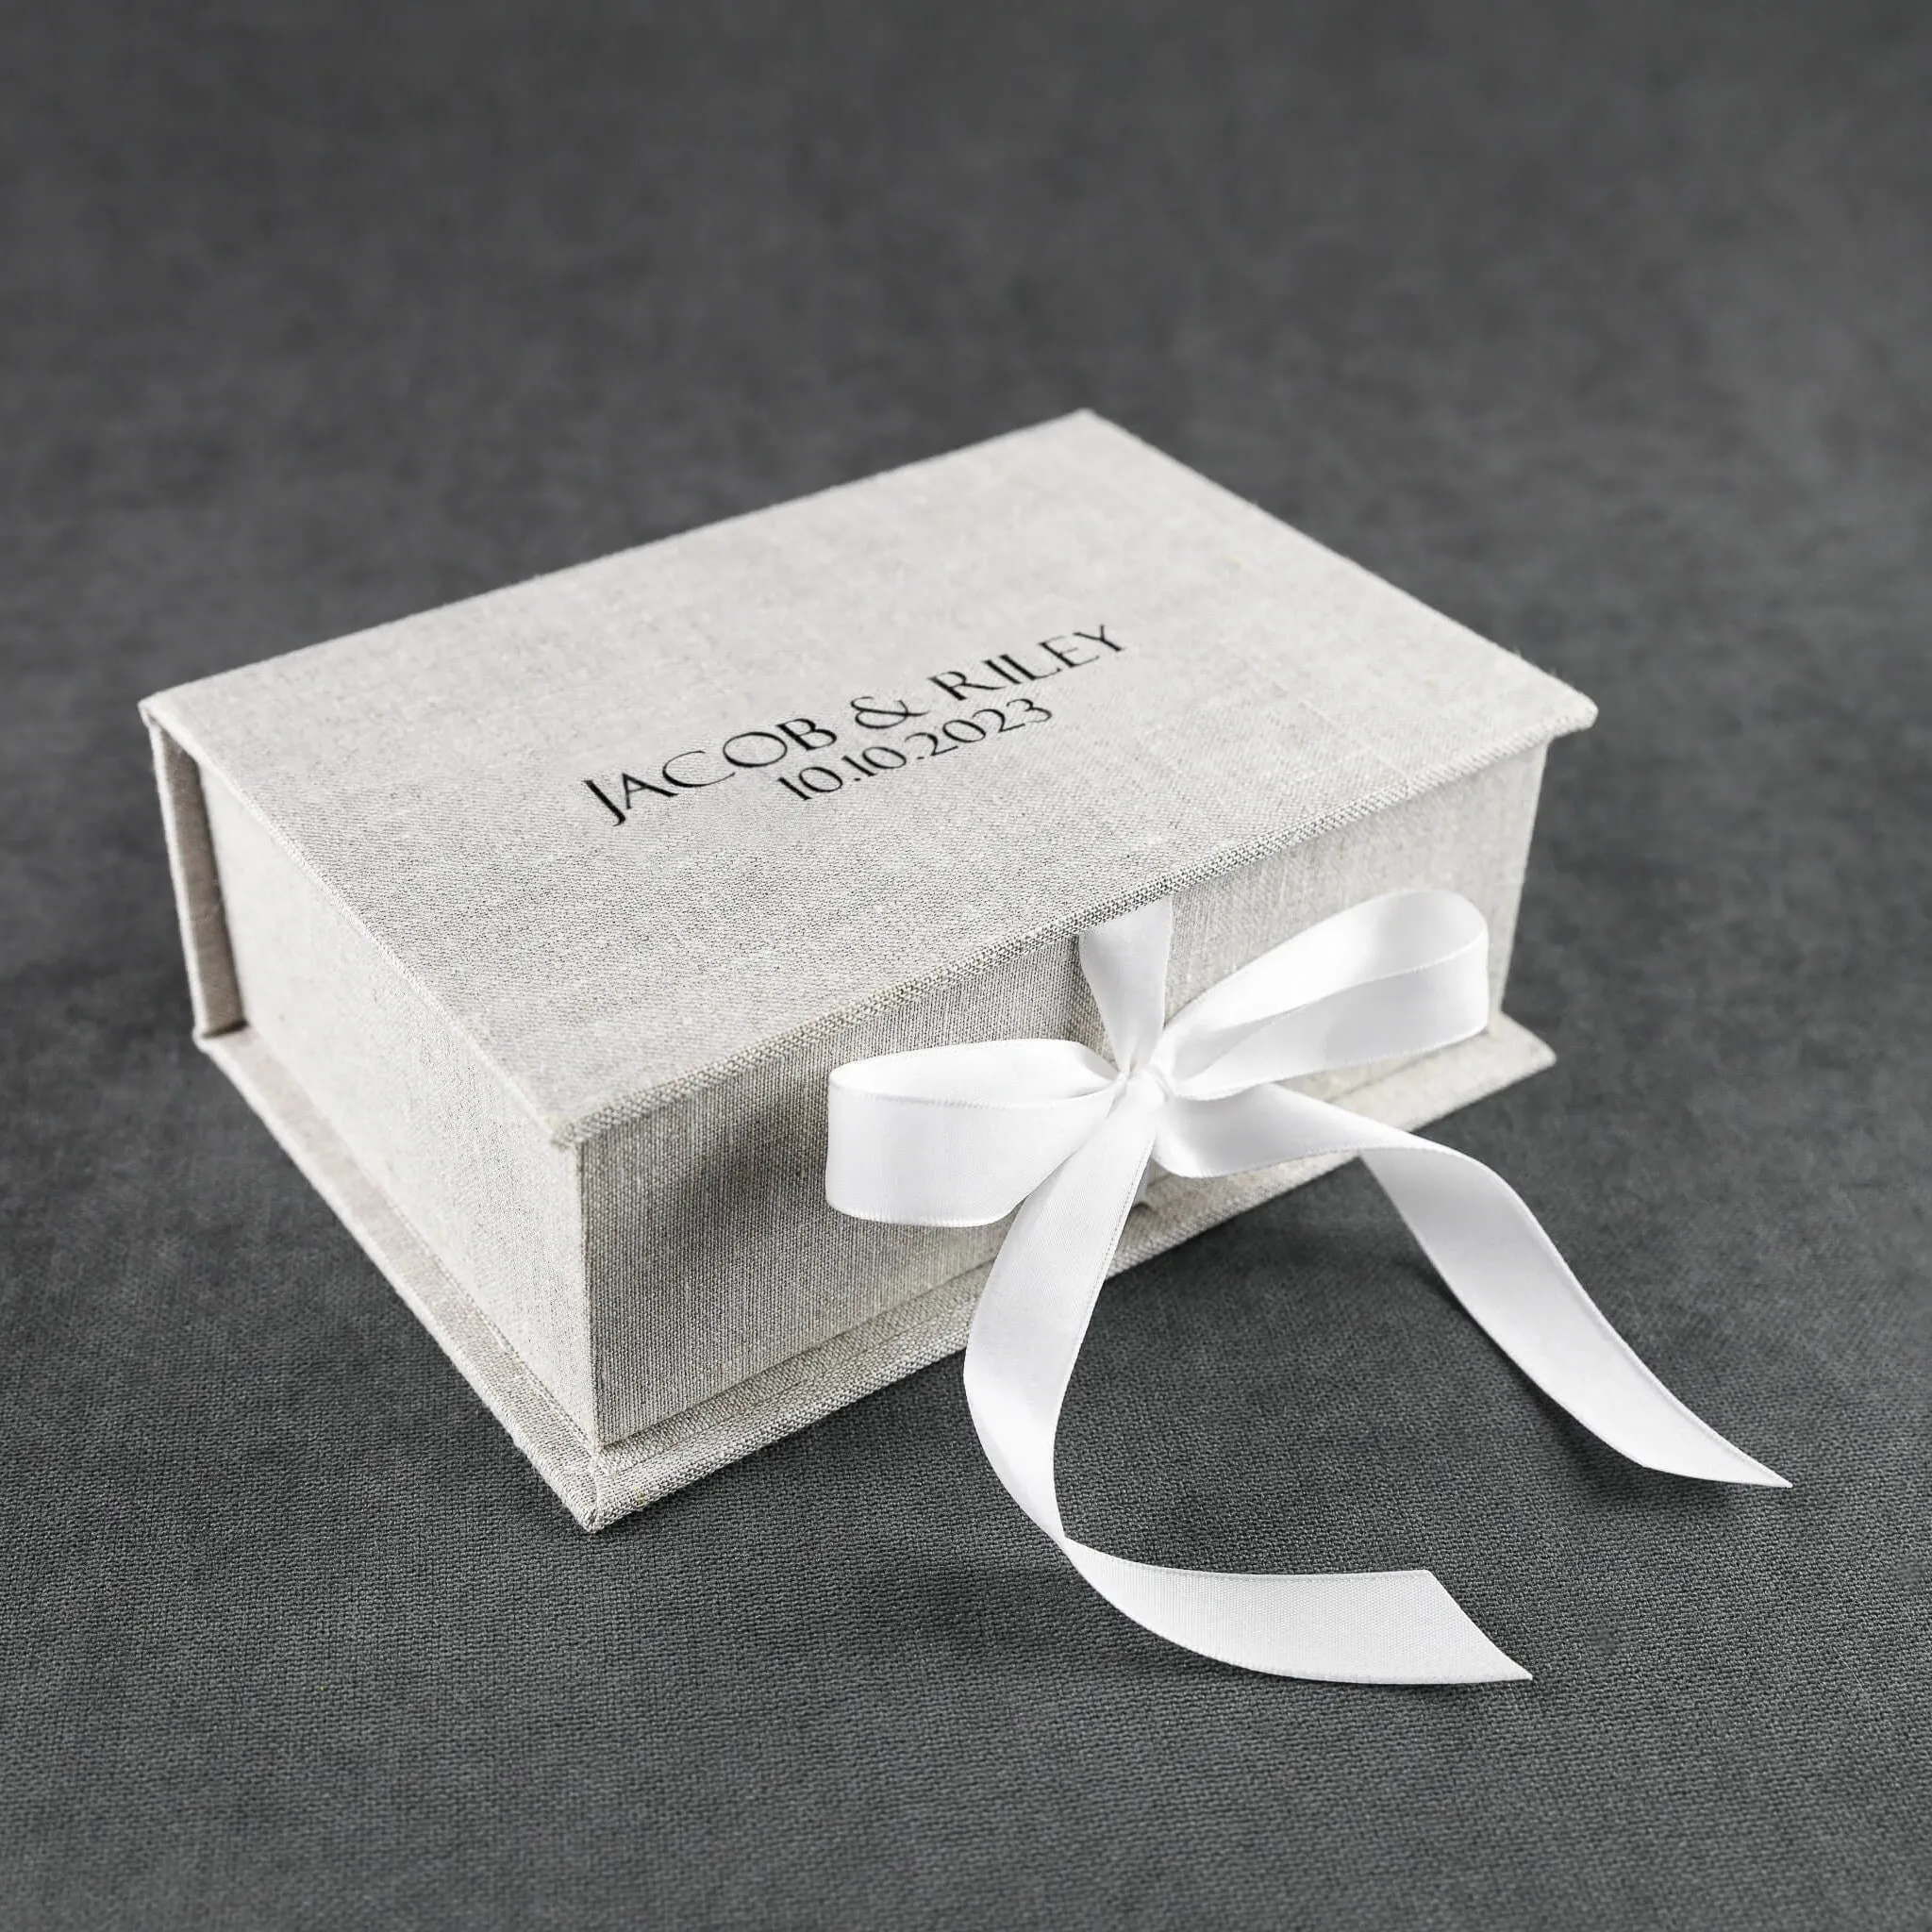 맞춤형 디자인 린넨 사진 웨딩 프레젠테이션 선물 상자 포장 상자 결혼식